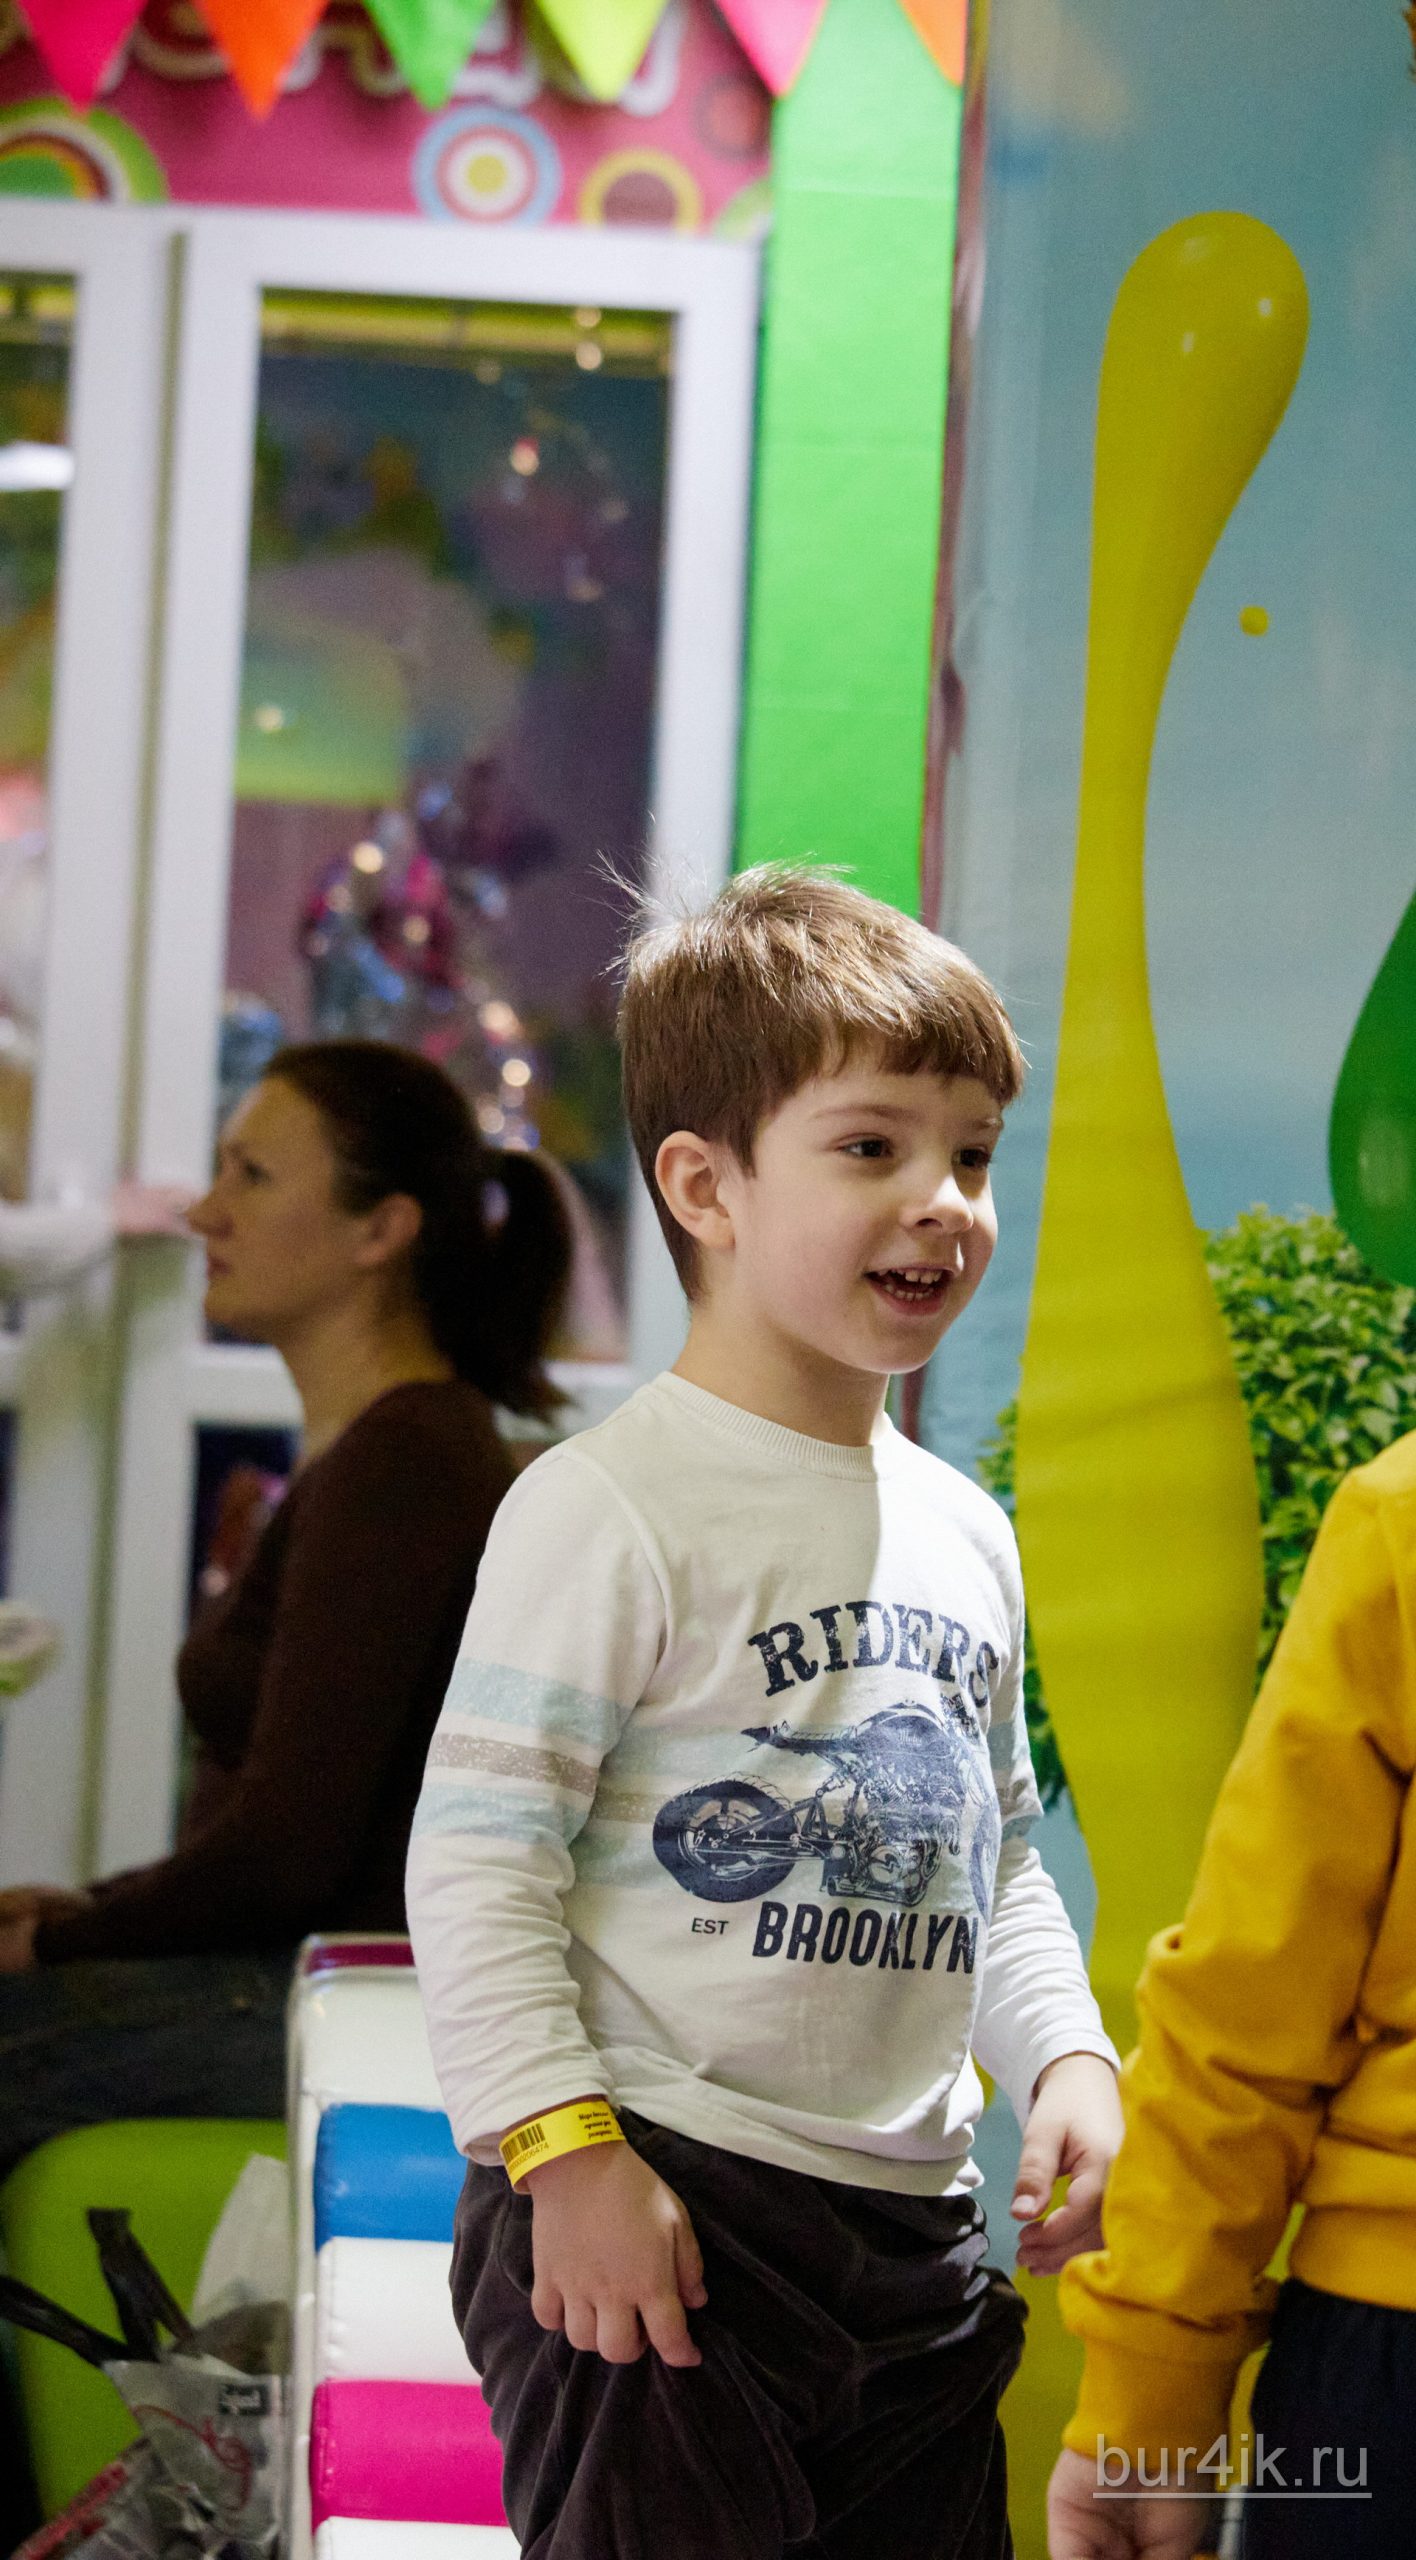 Фото Детское День Рождения в Детский Дворик 15.01.2020 №063 -photo- bur4ik.ru